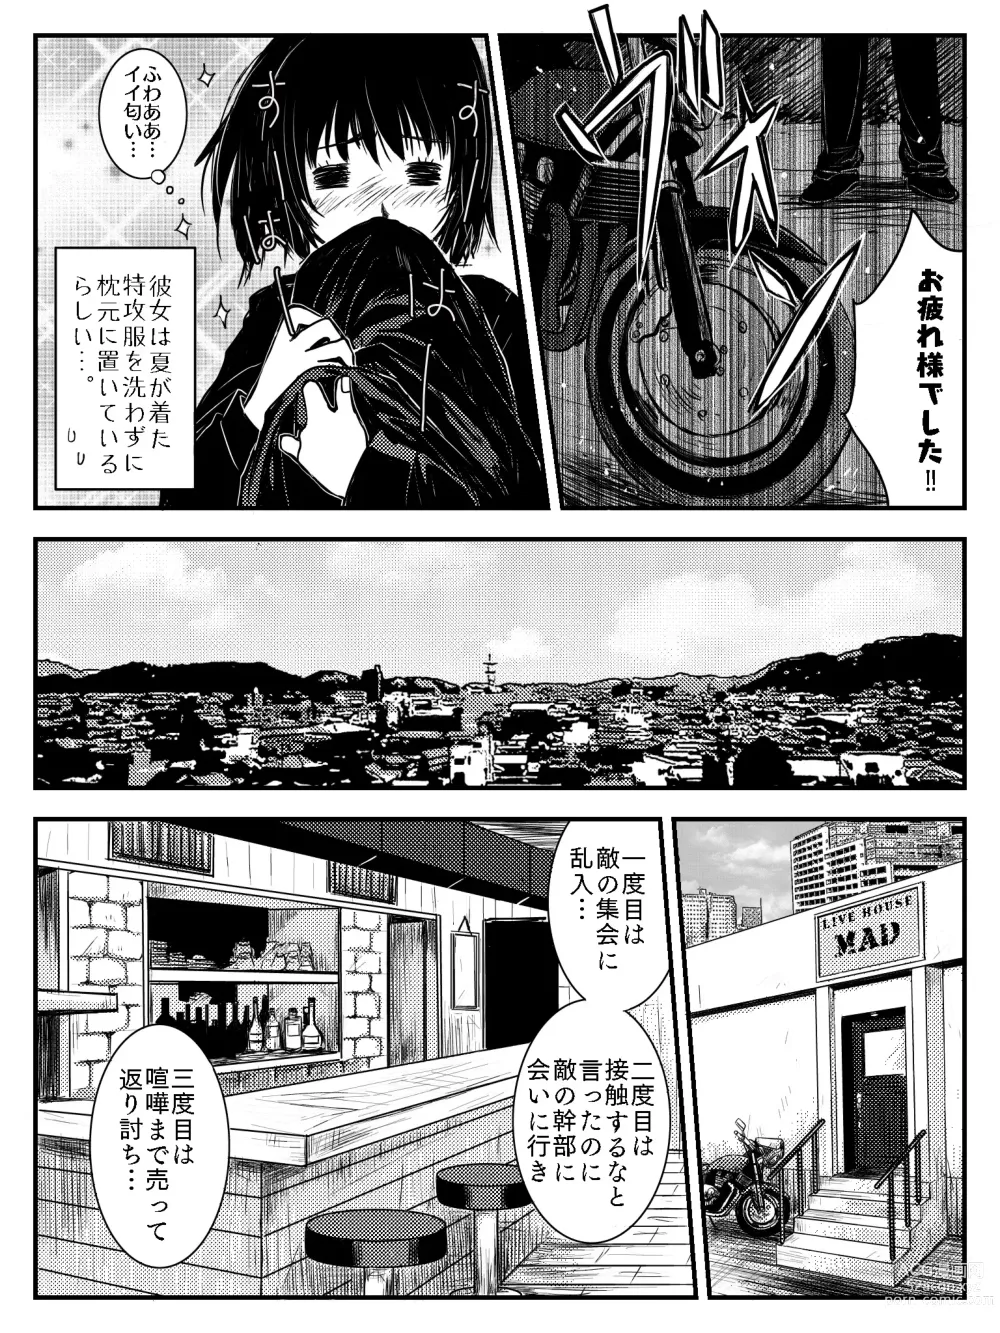 Page 10 of doujinshi LADIES NAVIGATION Episode 4